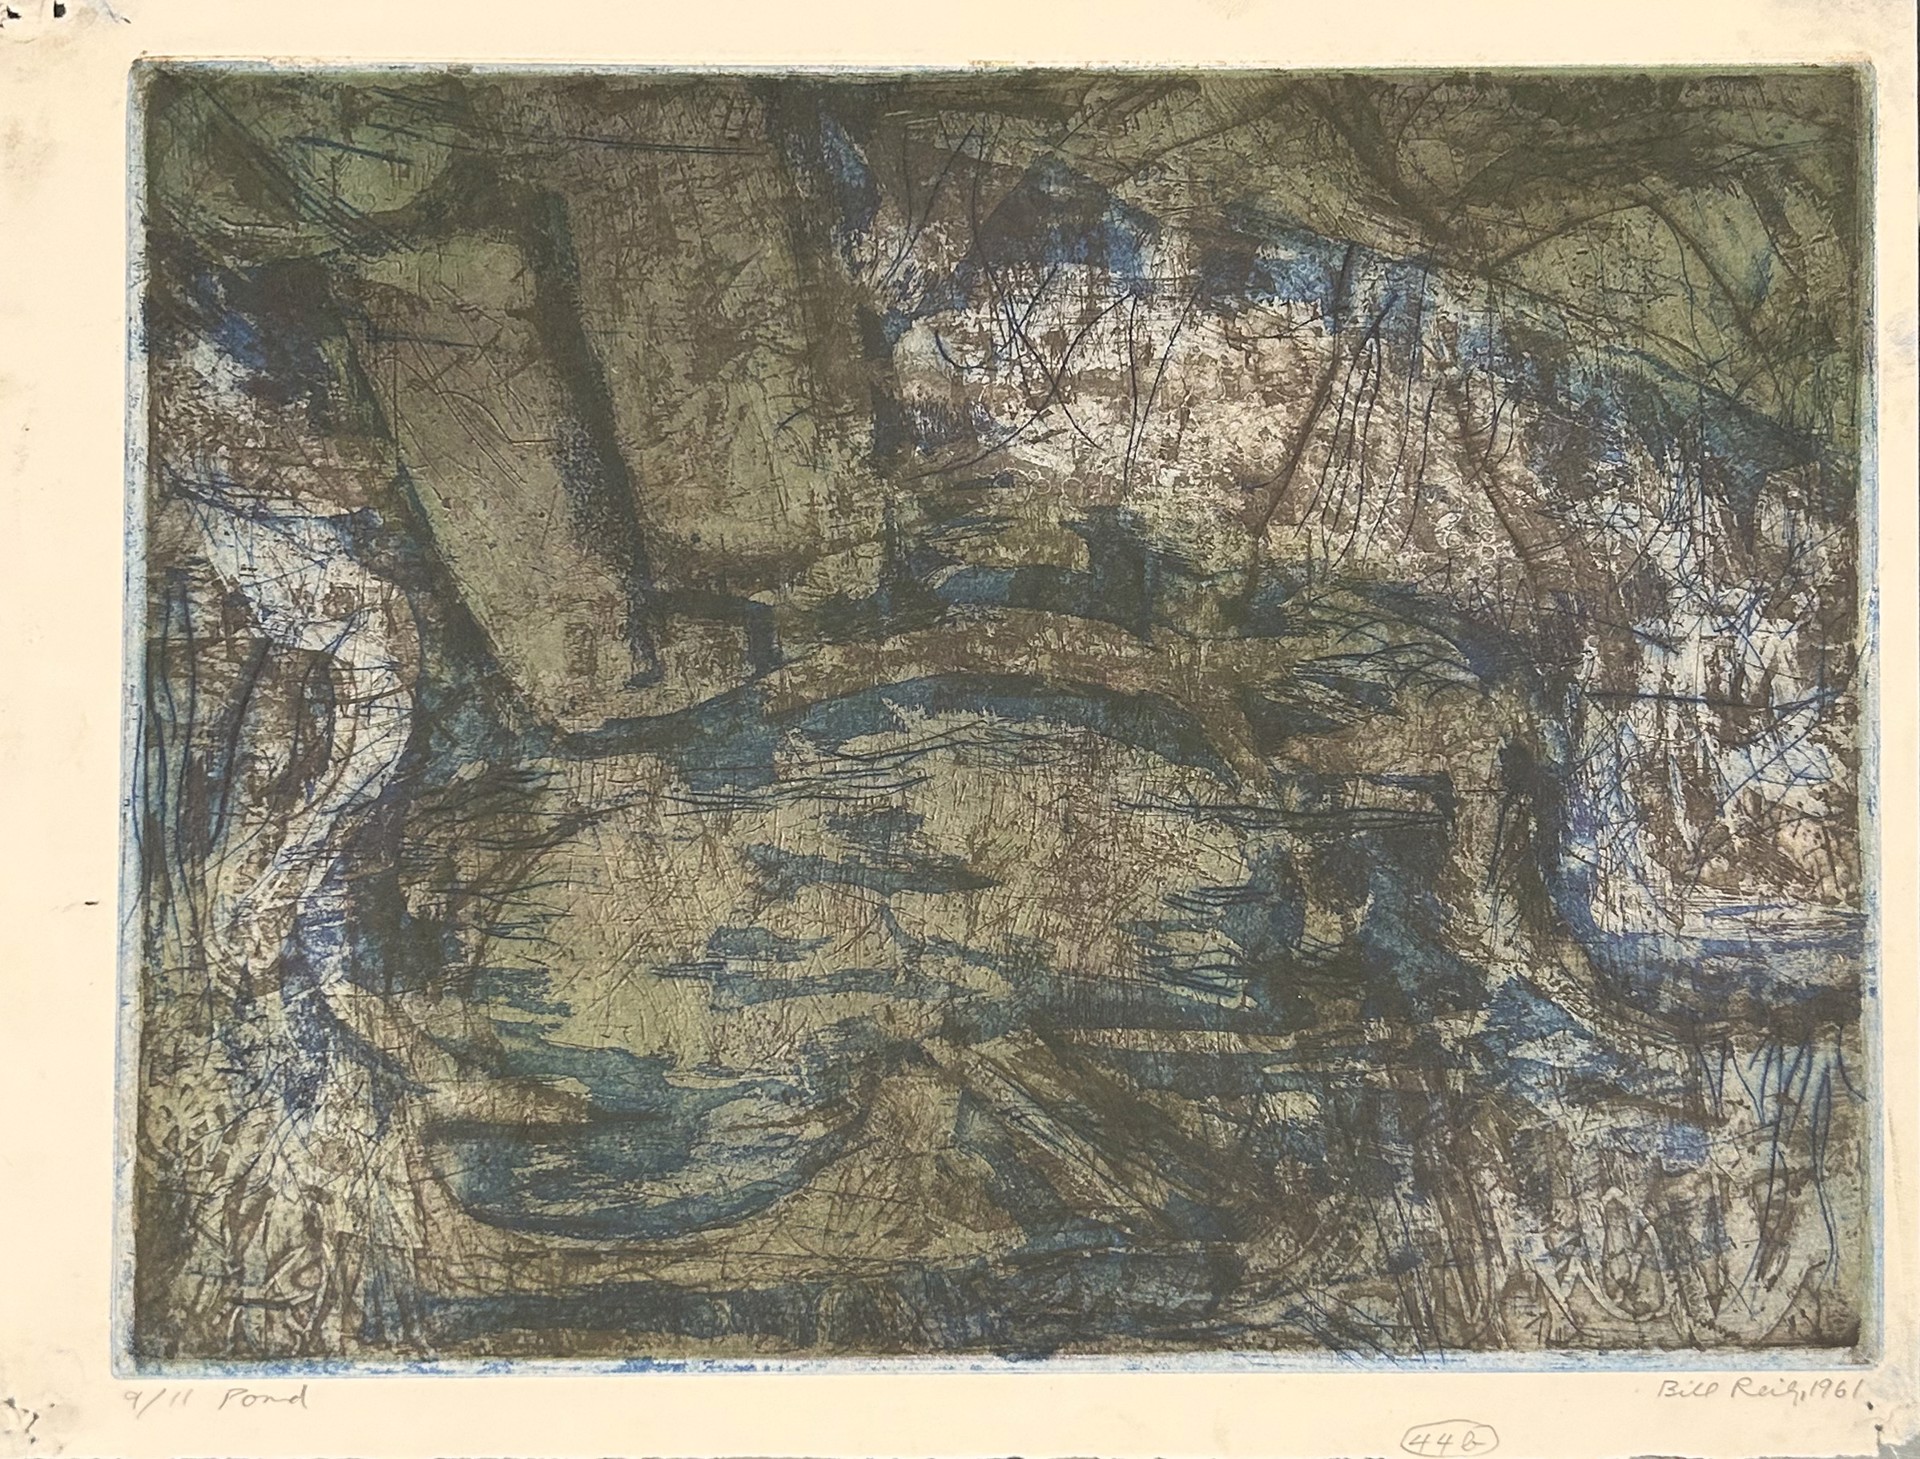 44b(iv). Pond by Bill Reily Prints